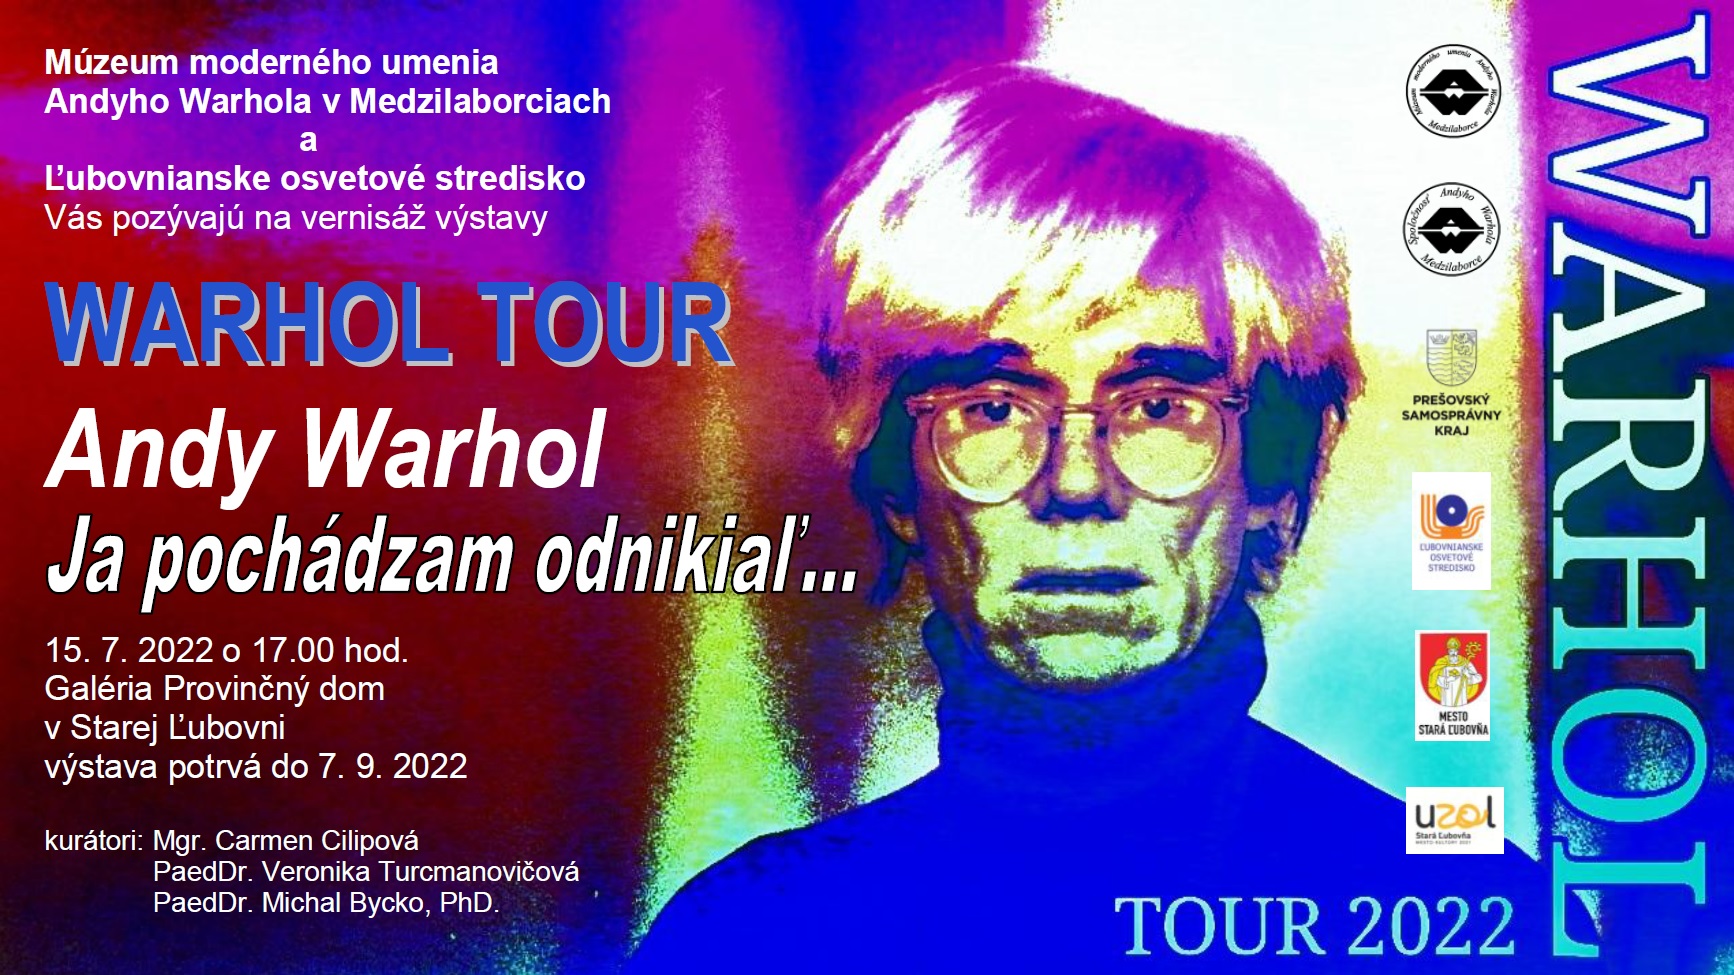 Warhol Tour 2022